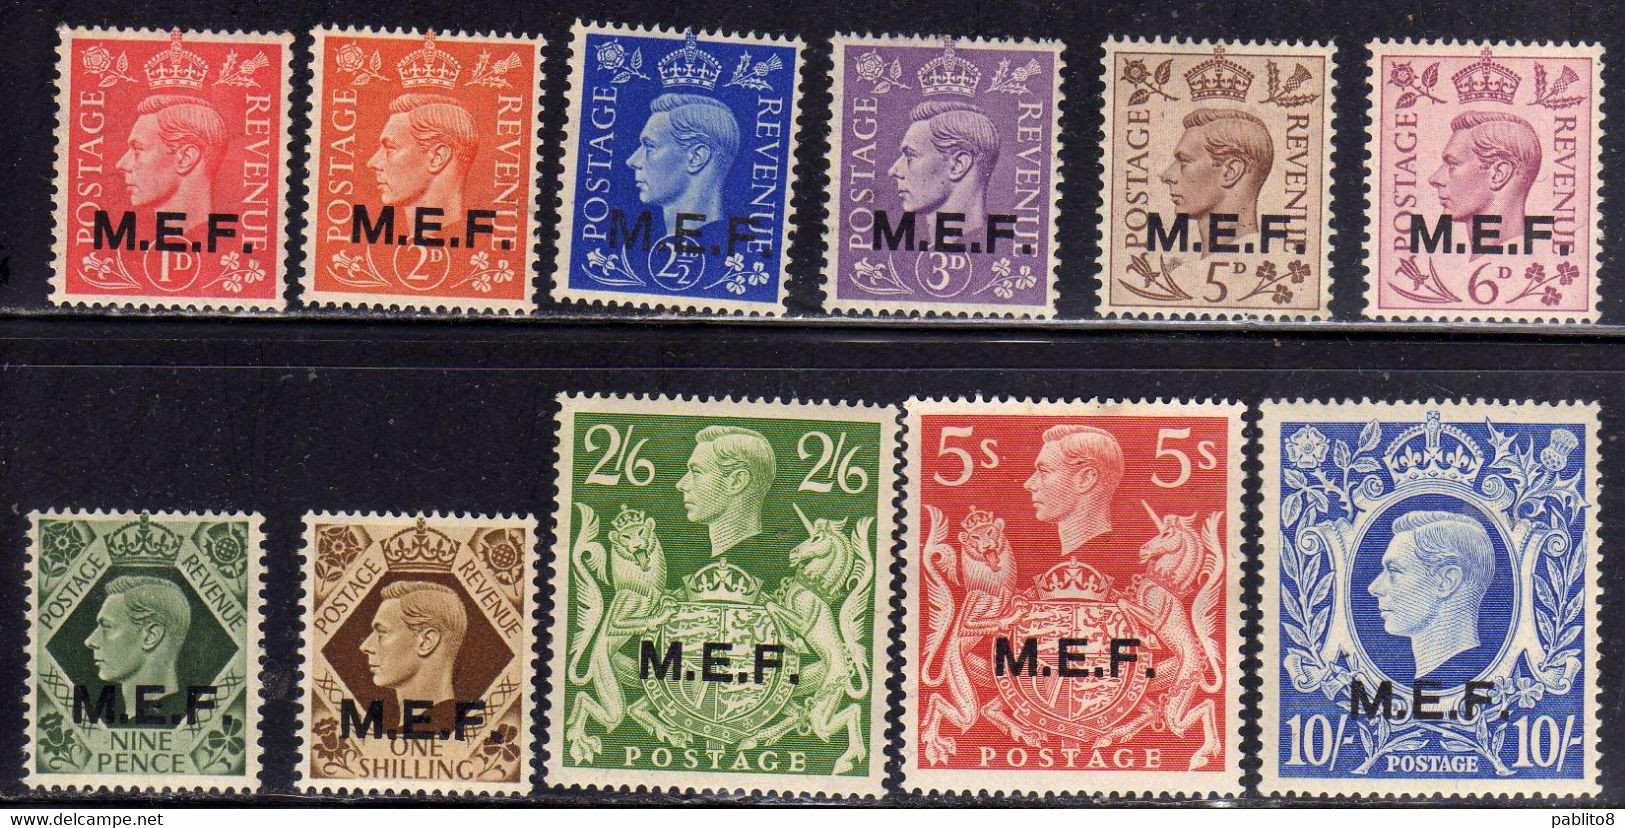 MEF 1943 - 1947 M.E.F. SERIE COMPLETA COMPLETE SET MNH - Britische Bes. MeF